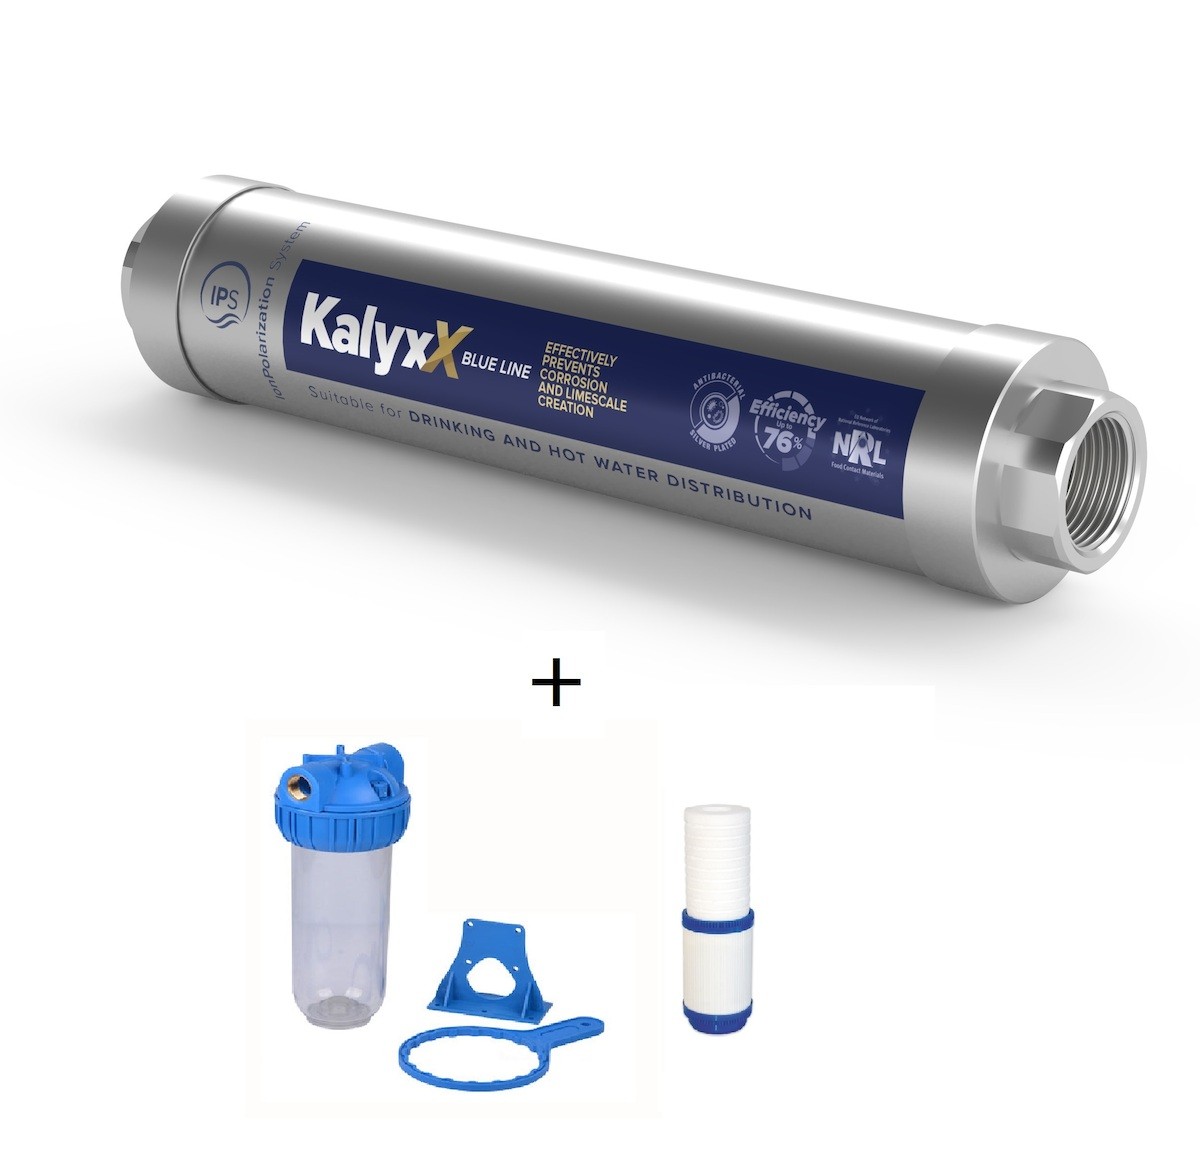 SAT - IPS KallyX Blue line 1/2" + domácí filtr včetně vložky IPSKXBG12HF121010M SAT